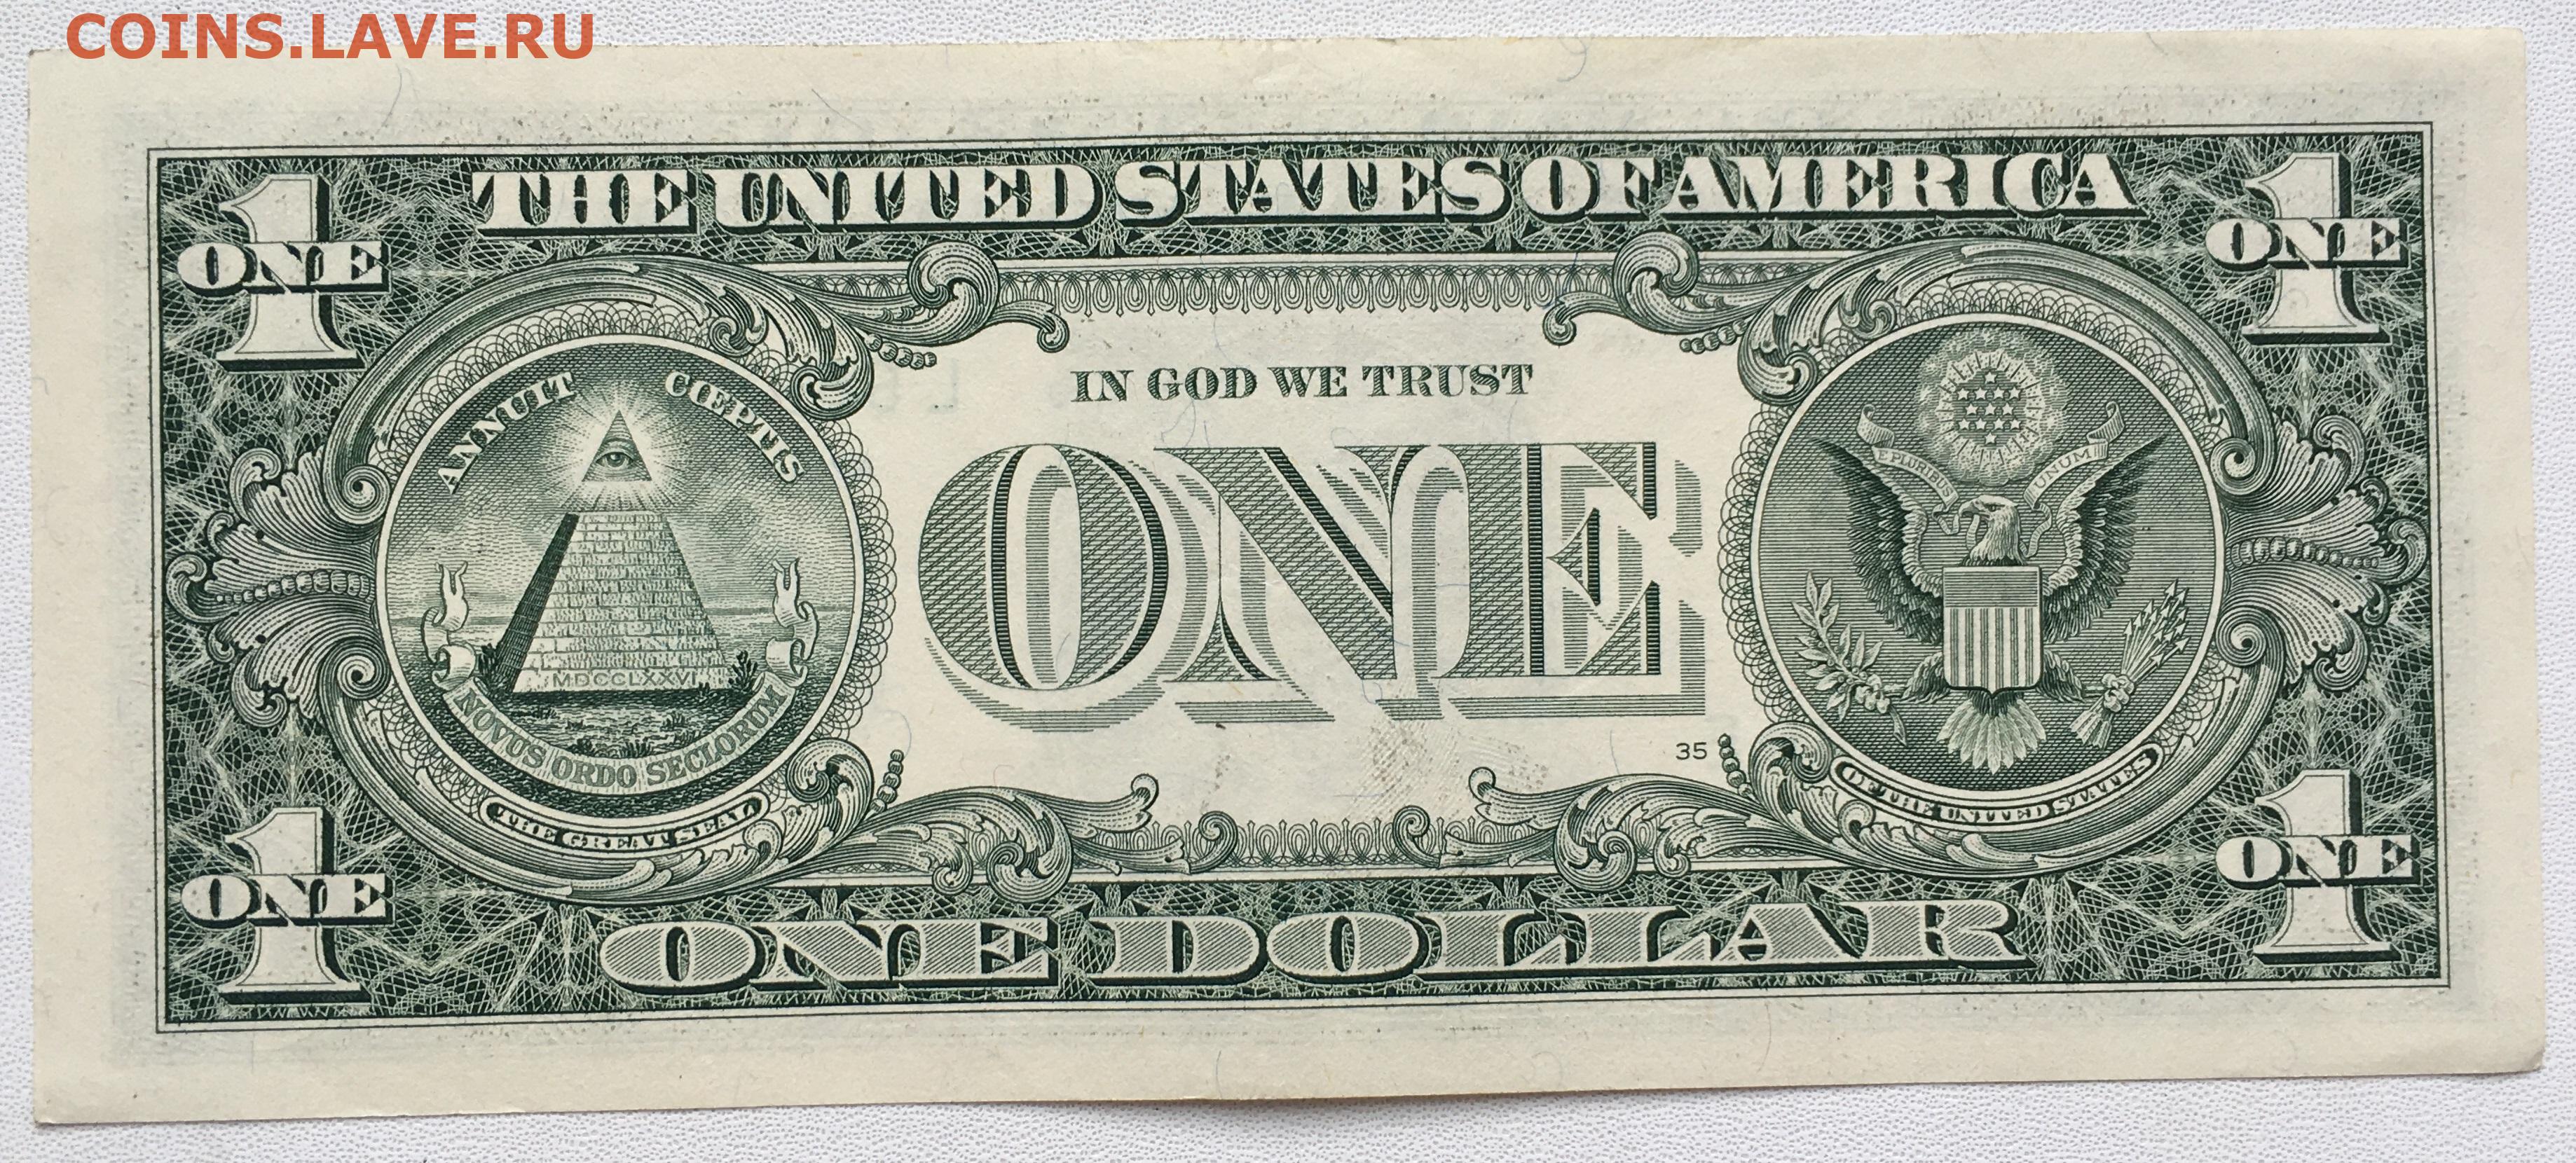 Нашел 1 доллар. Банкнота 1 доллар США. Американская купюра 1 доллар. Изображение 1 долларовой купюры. Изображение однодолларовой купюры США.